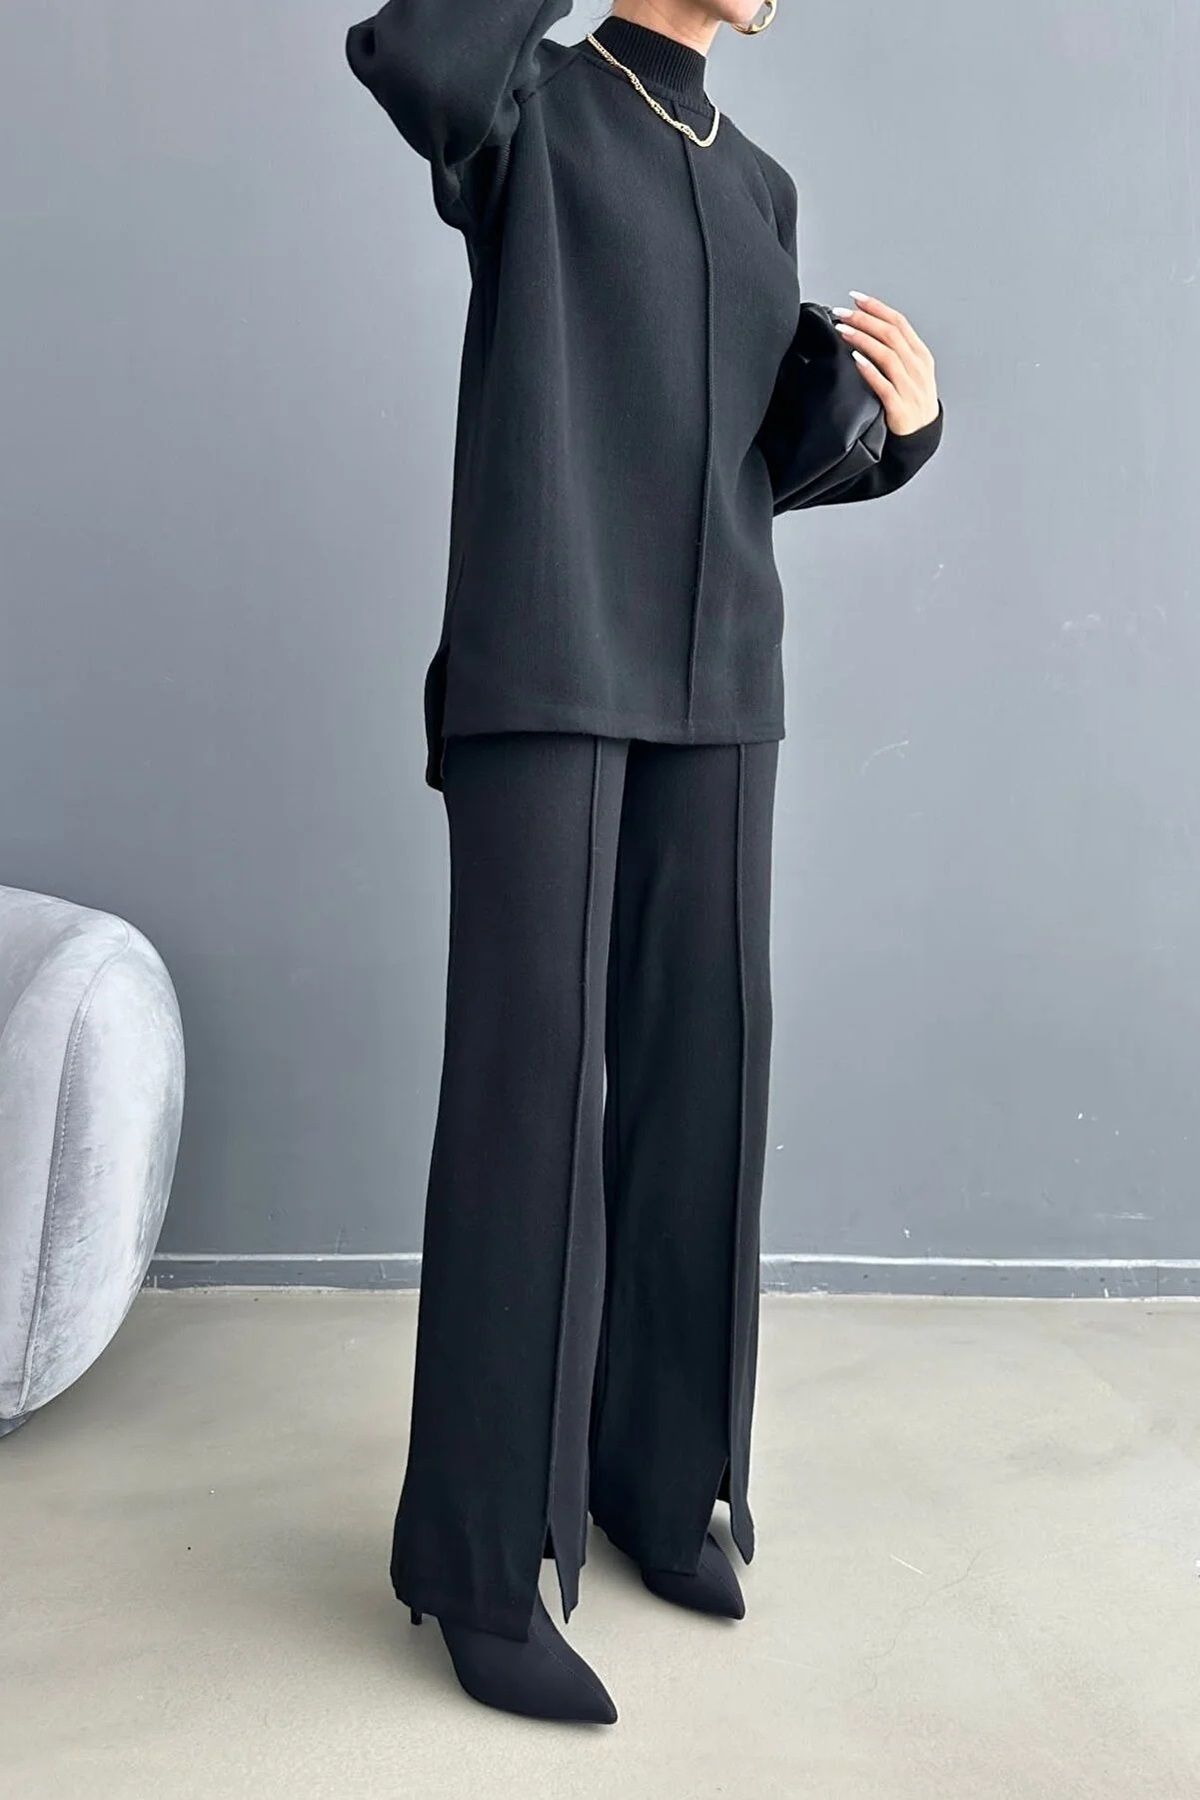 WOMAN VISION Kadın Dik Yaka Triko Kumaş Uzun Kollu Siyah Kazak Ve Yüksek Bel Siyah Pantolon Takım 1070